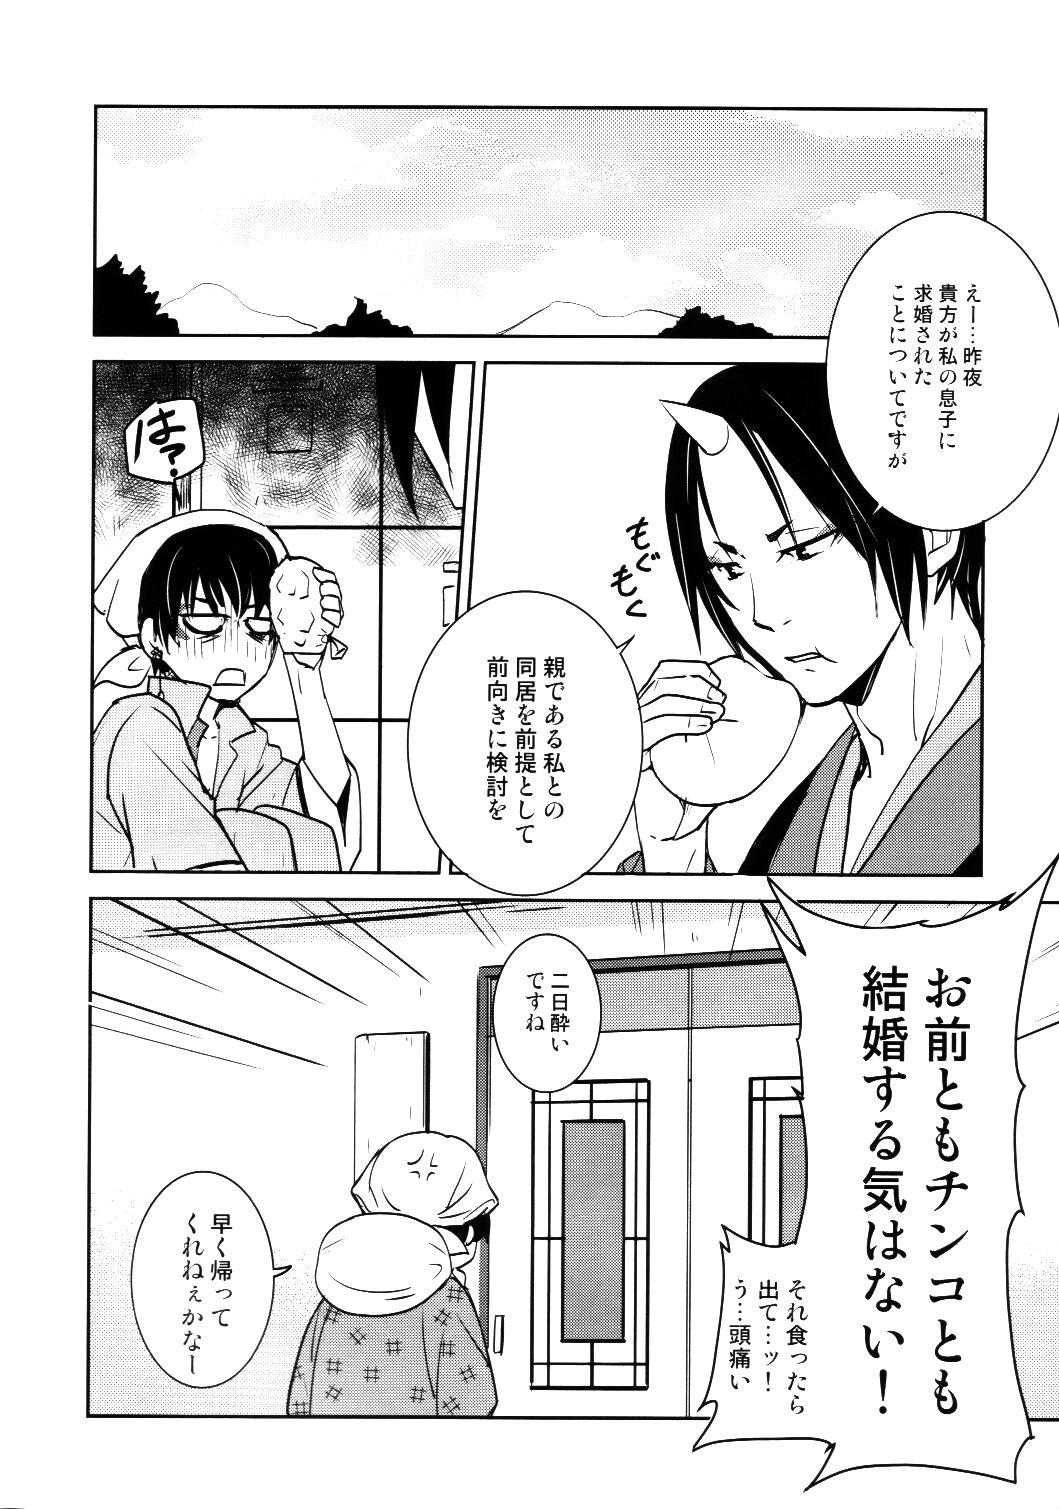 Nudist Honjitsu gentei! Hosa-kan no yome - Hoozuki no reitetsu Lips - Page 21